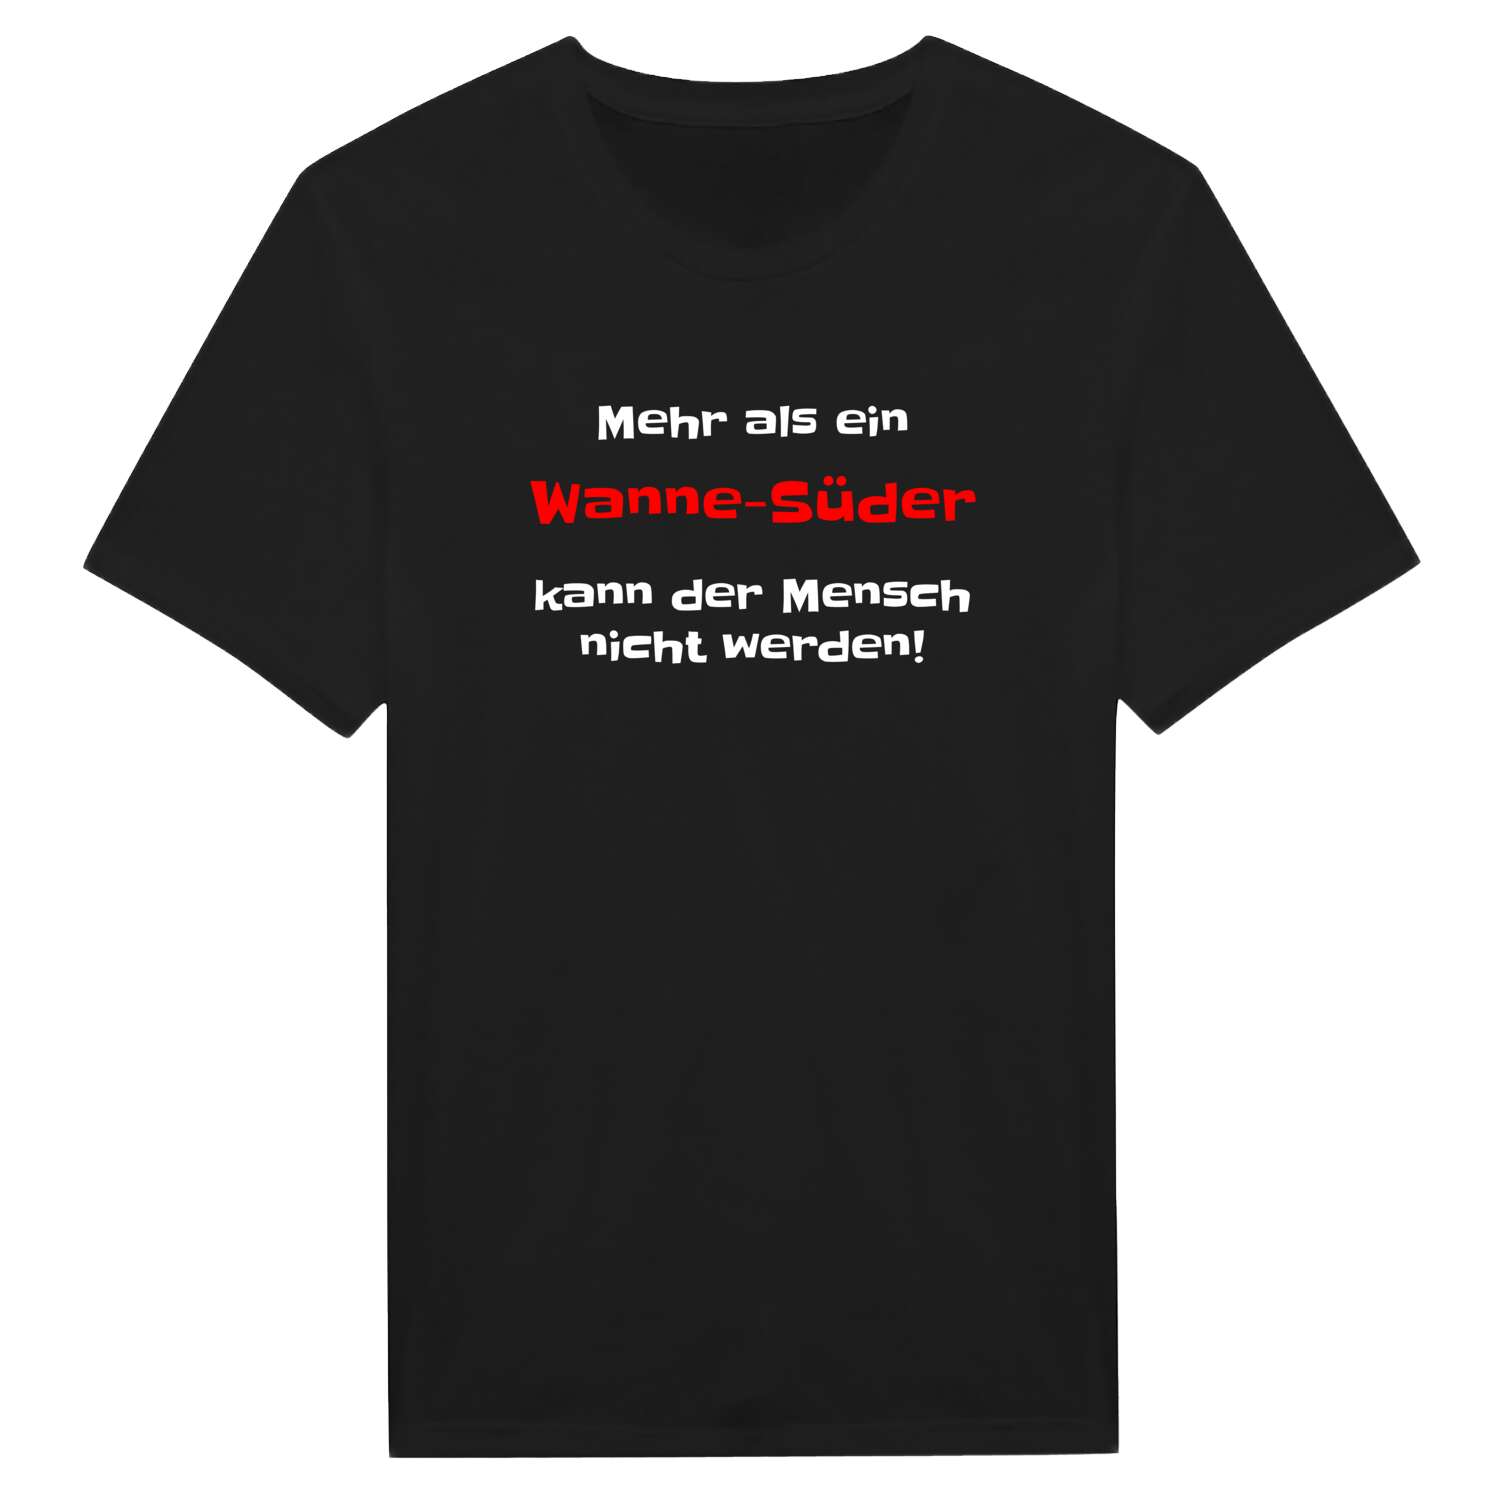 Wanne-Süd T-Shirt »Mehr als ein«